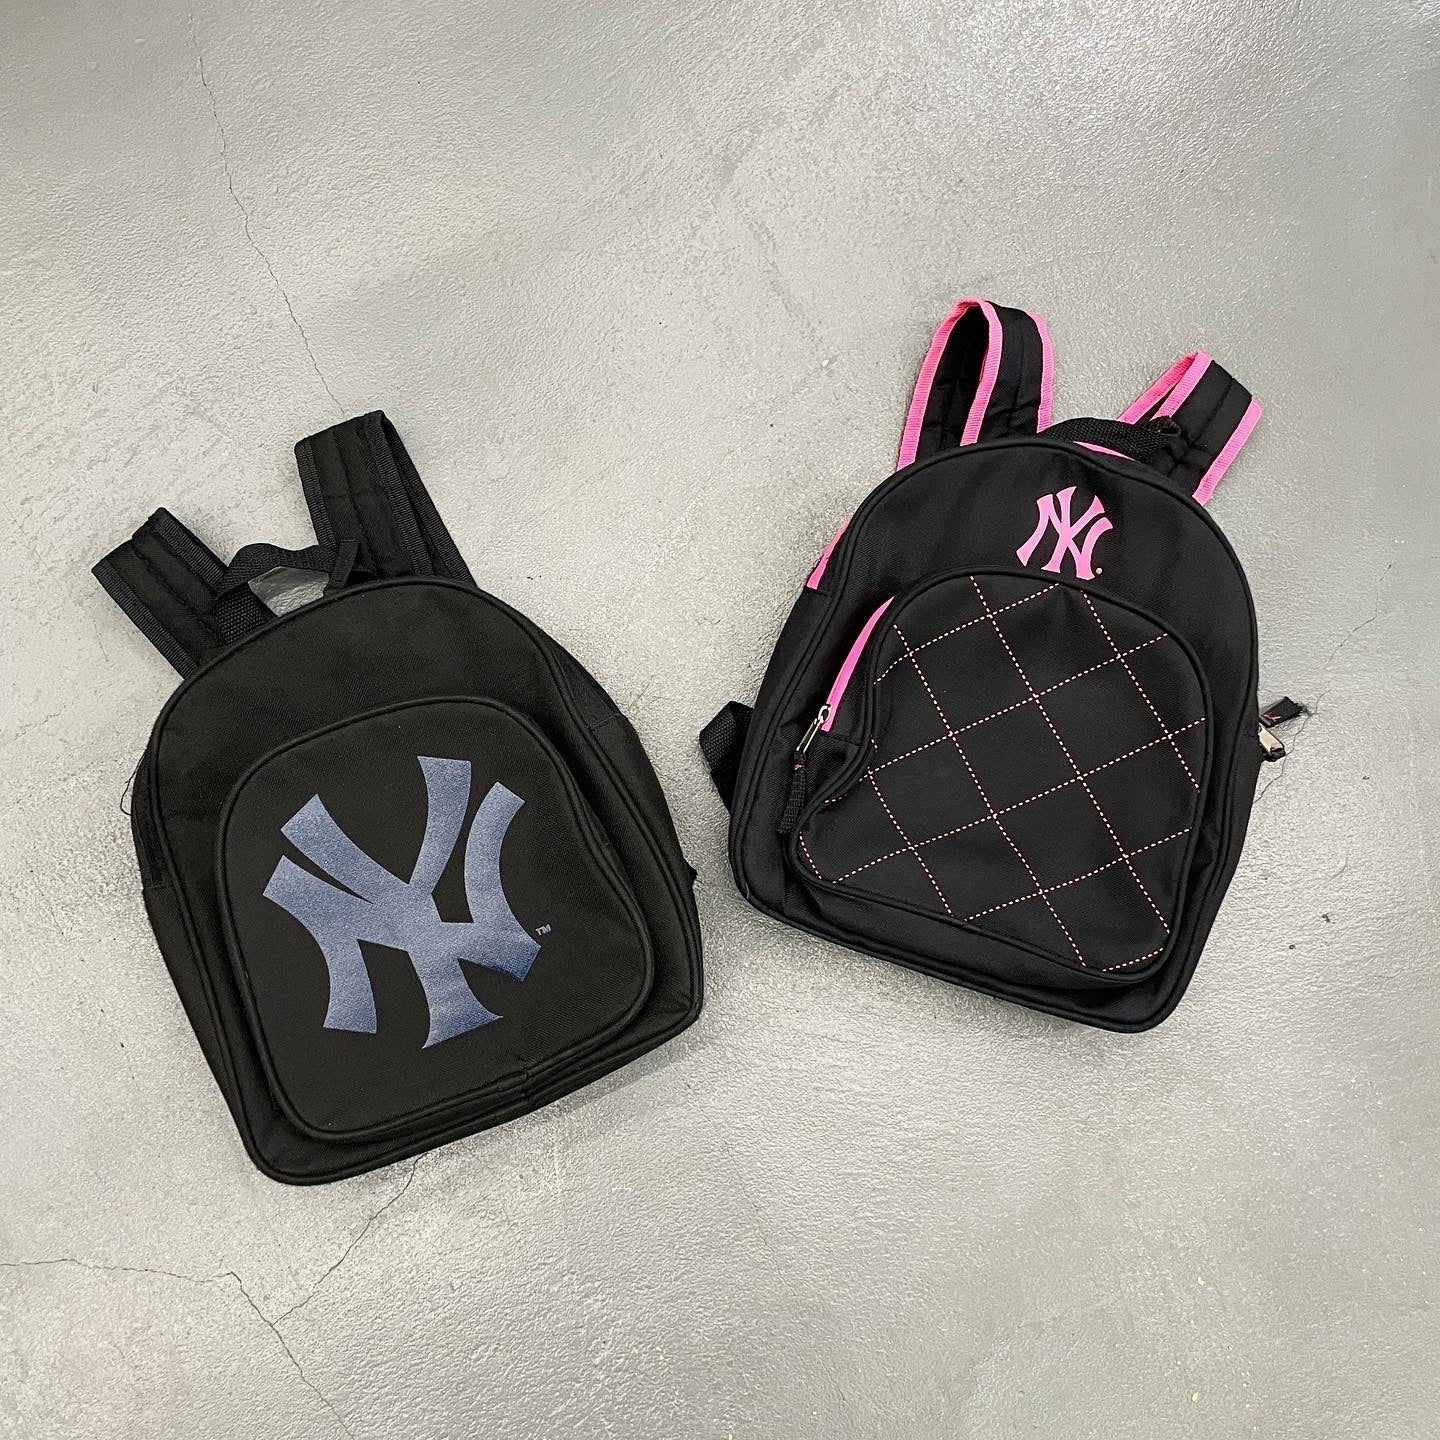 New York Yankees Mini BackPacks